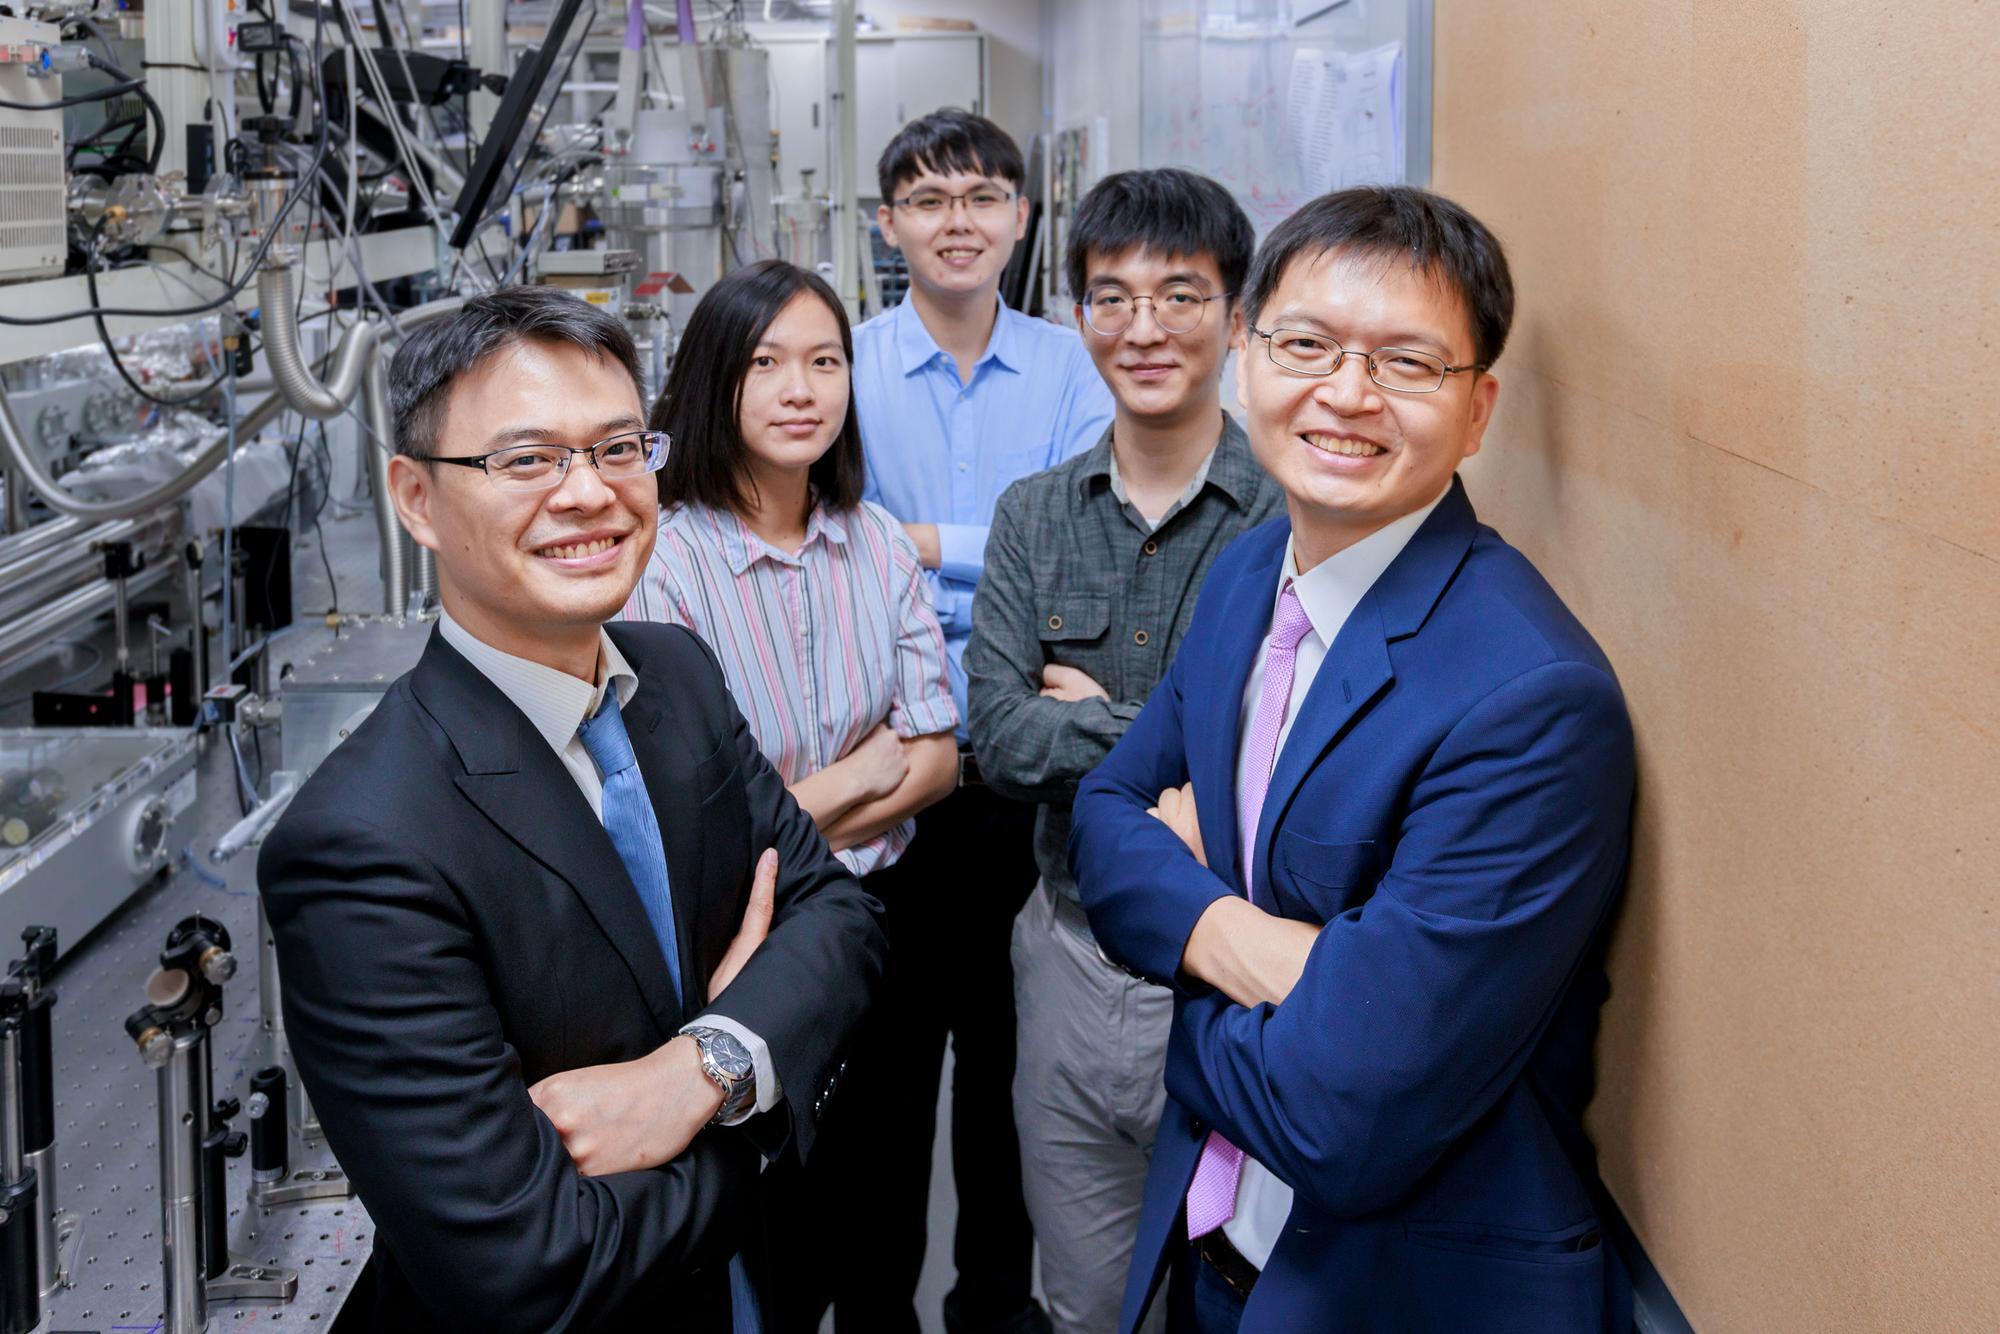 Members of the NTHU research team (right to left): Ming-Chang Chen, Po-Wei Lai, Ming-Shian Tsai, An-Yuan Liang, and Ming-Wei Lin.